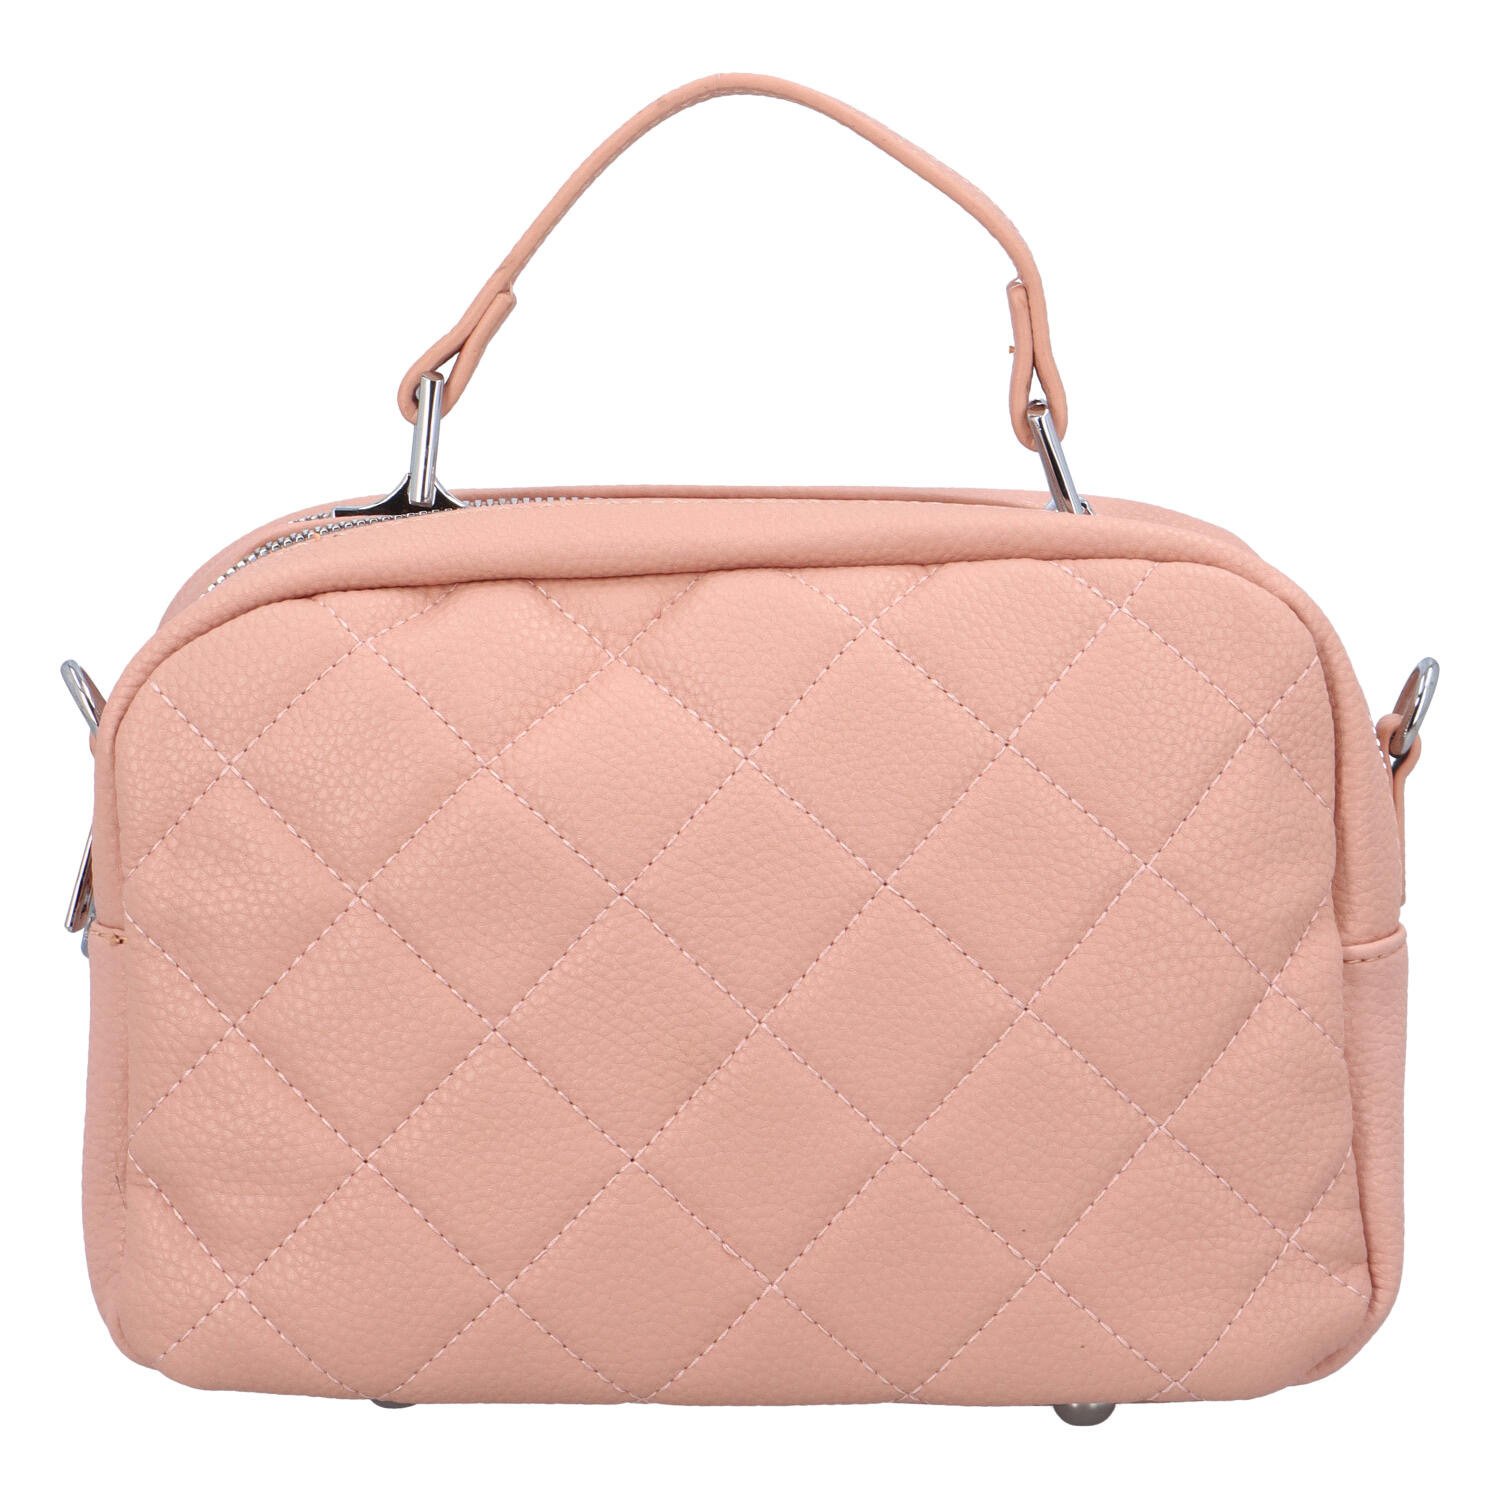 Módní dámská kufříková kabelka s prošíváním Nabass,  růžová.